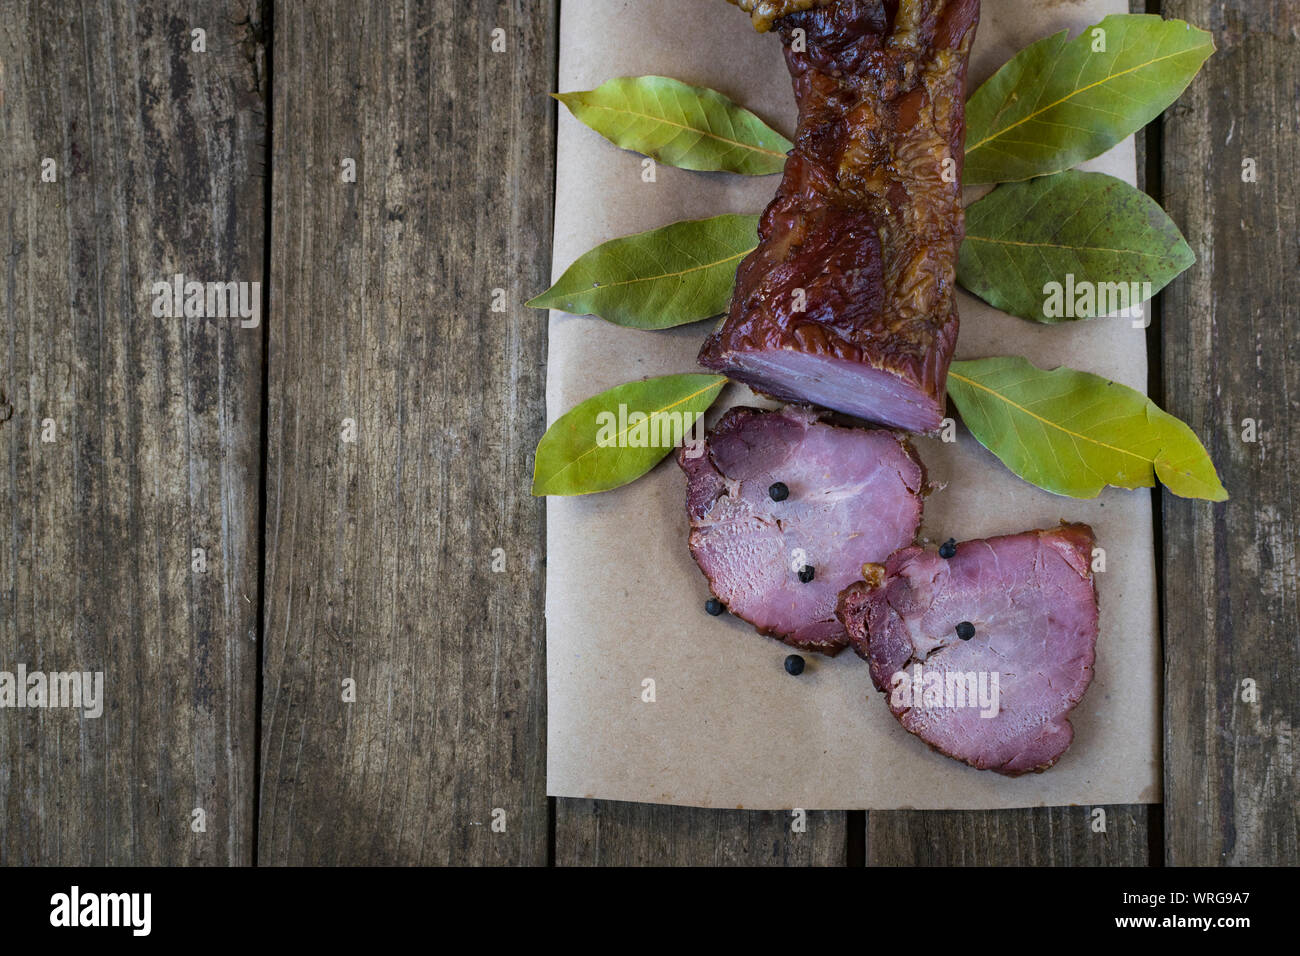 La viande de porc séchées avec des piments, poivre noir, ail et bay leafs sur la vieille table en bois. High angle view, avec l'espace pour le texte. Banque D'Images